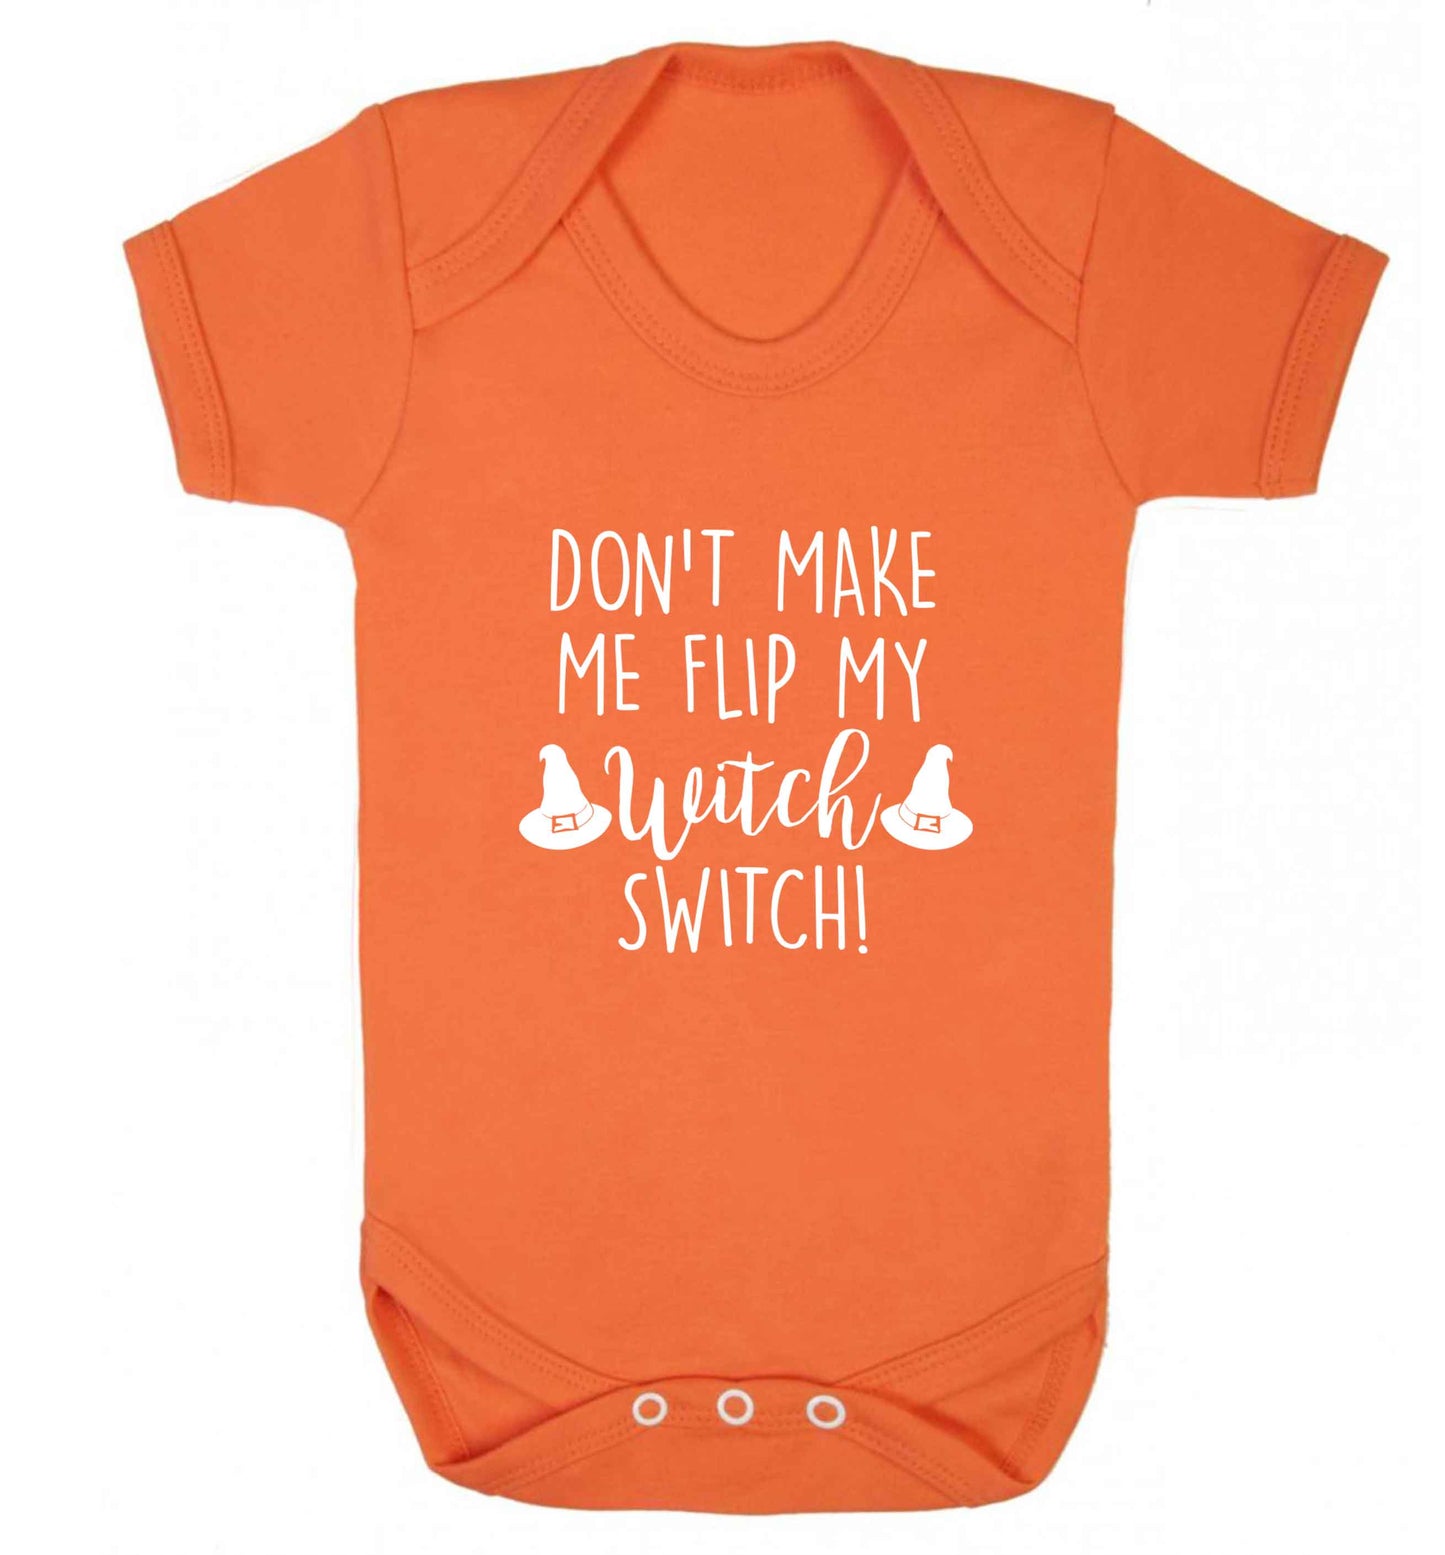 Don't make me flip my witch switch baby vest orange 18-24 months